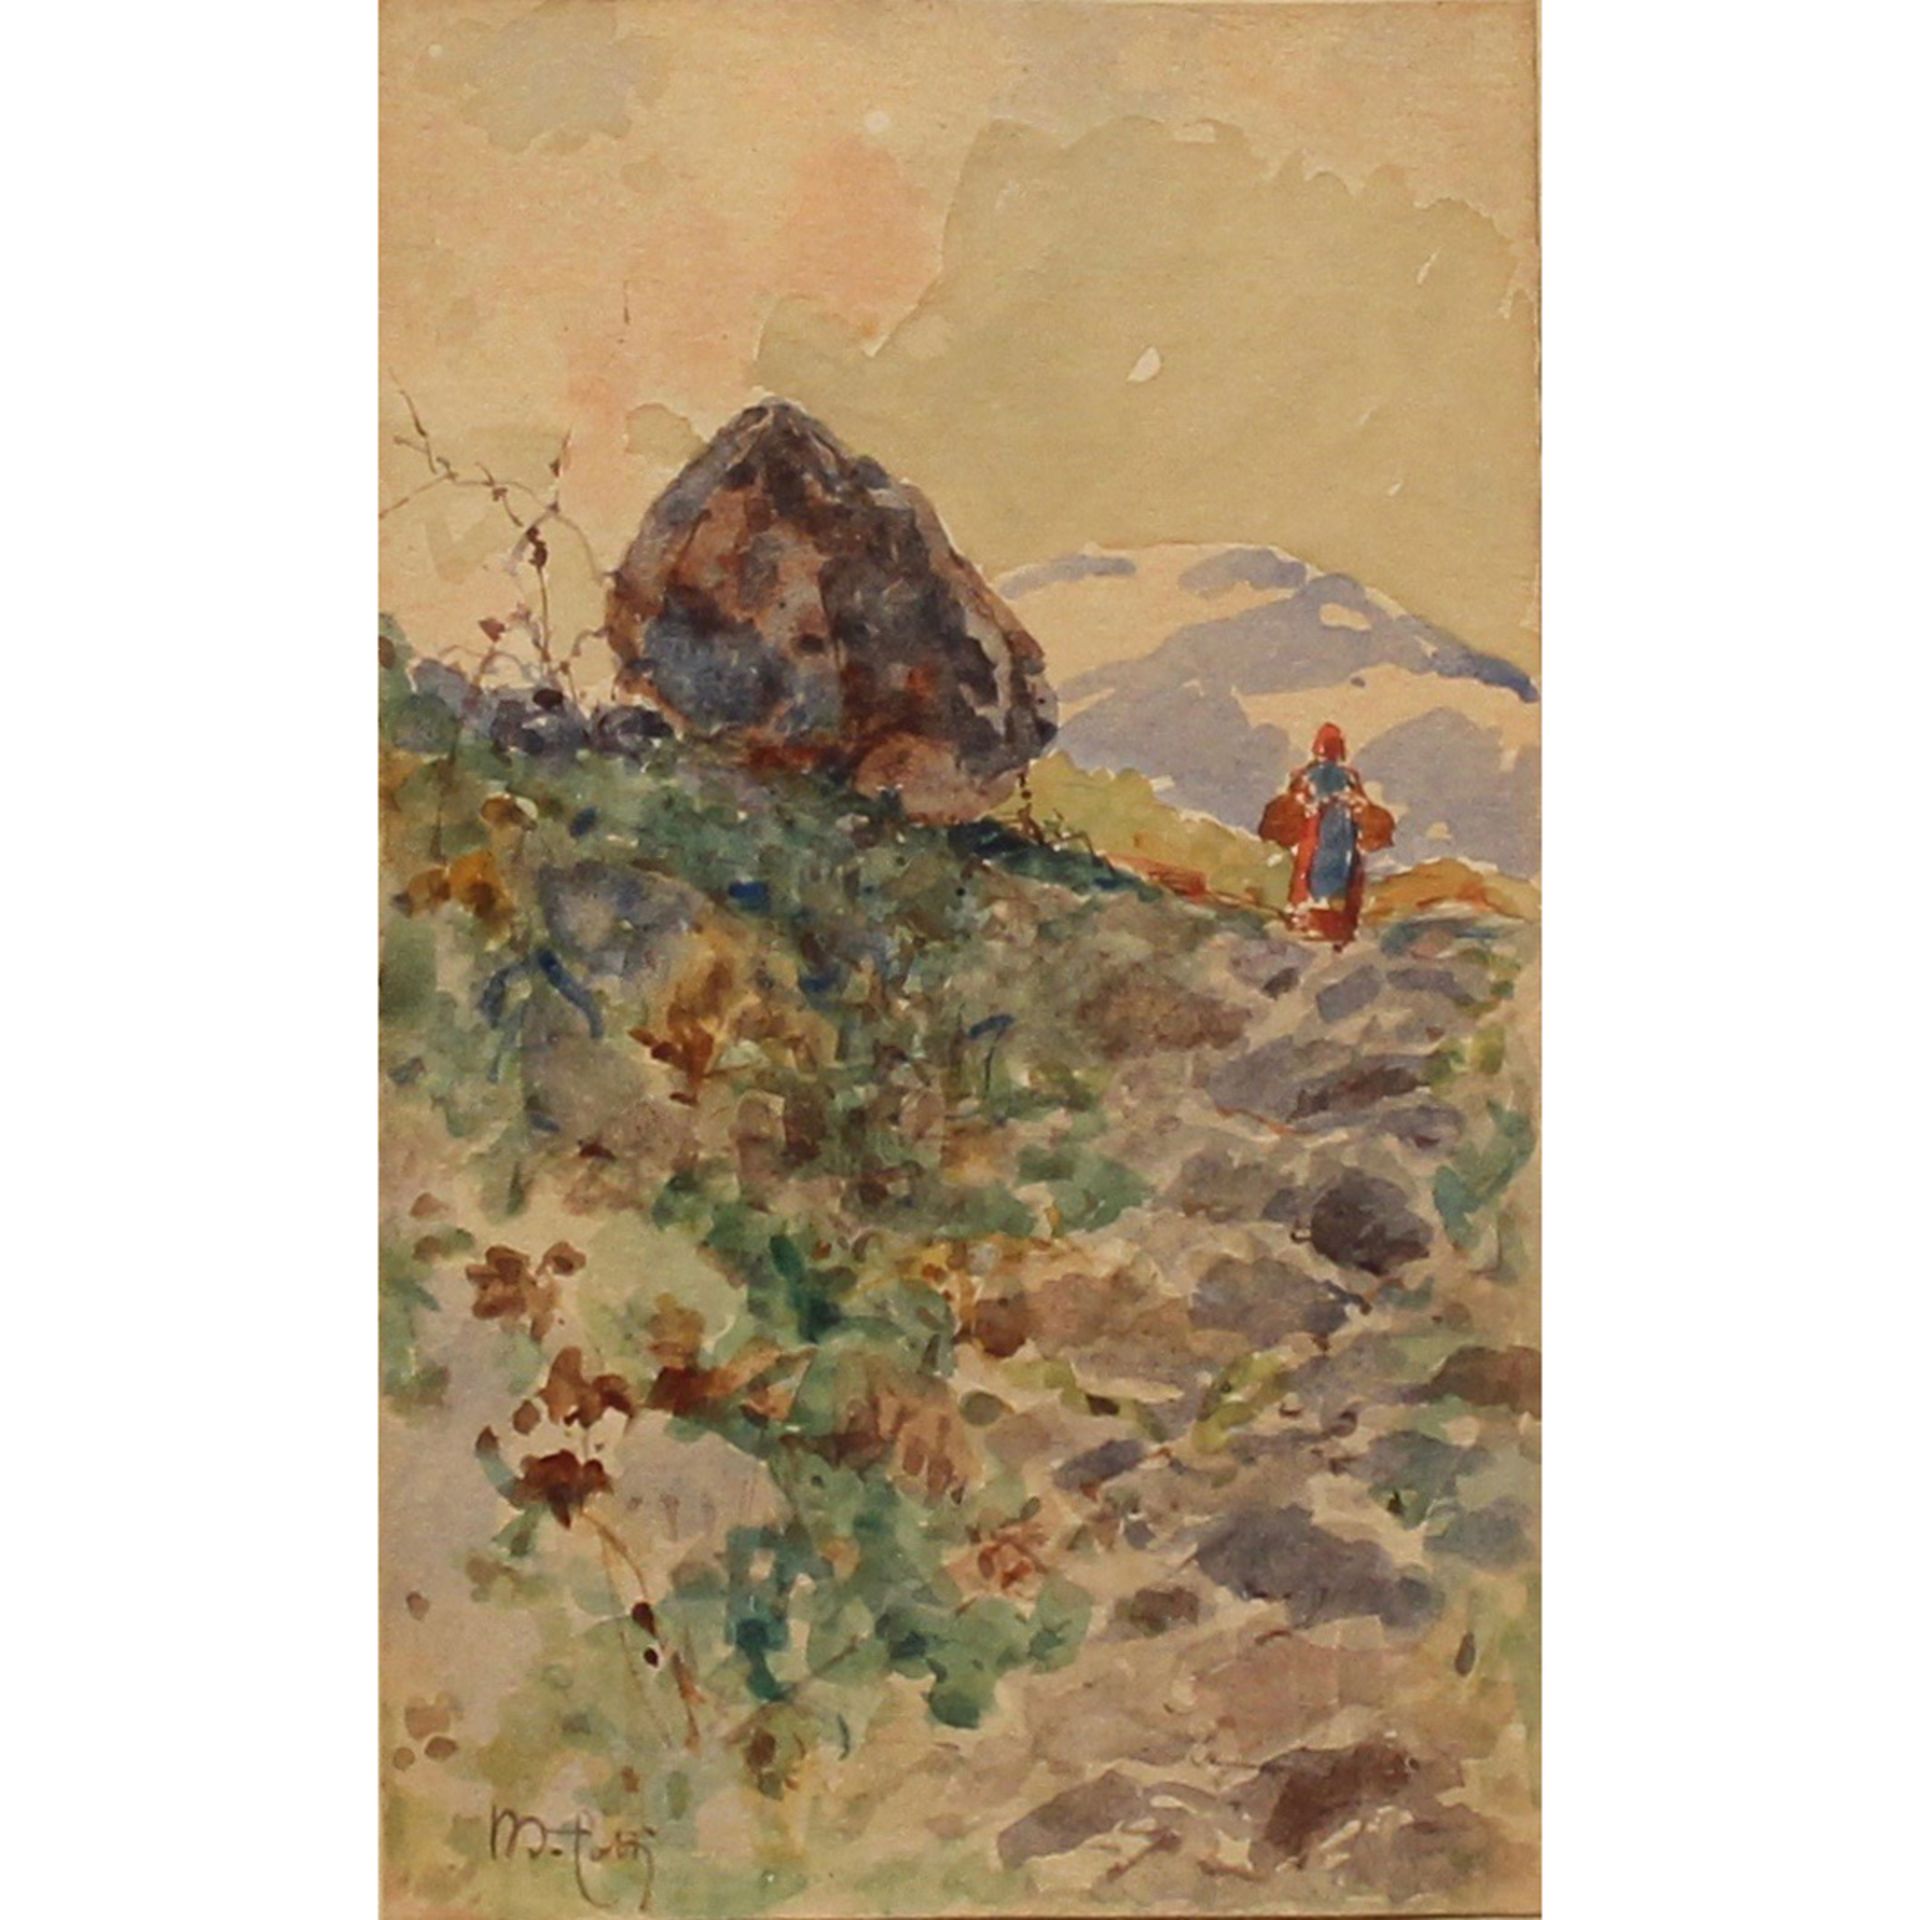 MICHELE CATTI (1855-1914) "Paesaggio montano" - "Mountain landscape"